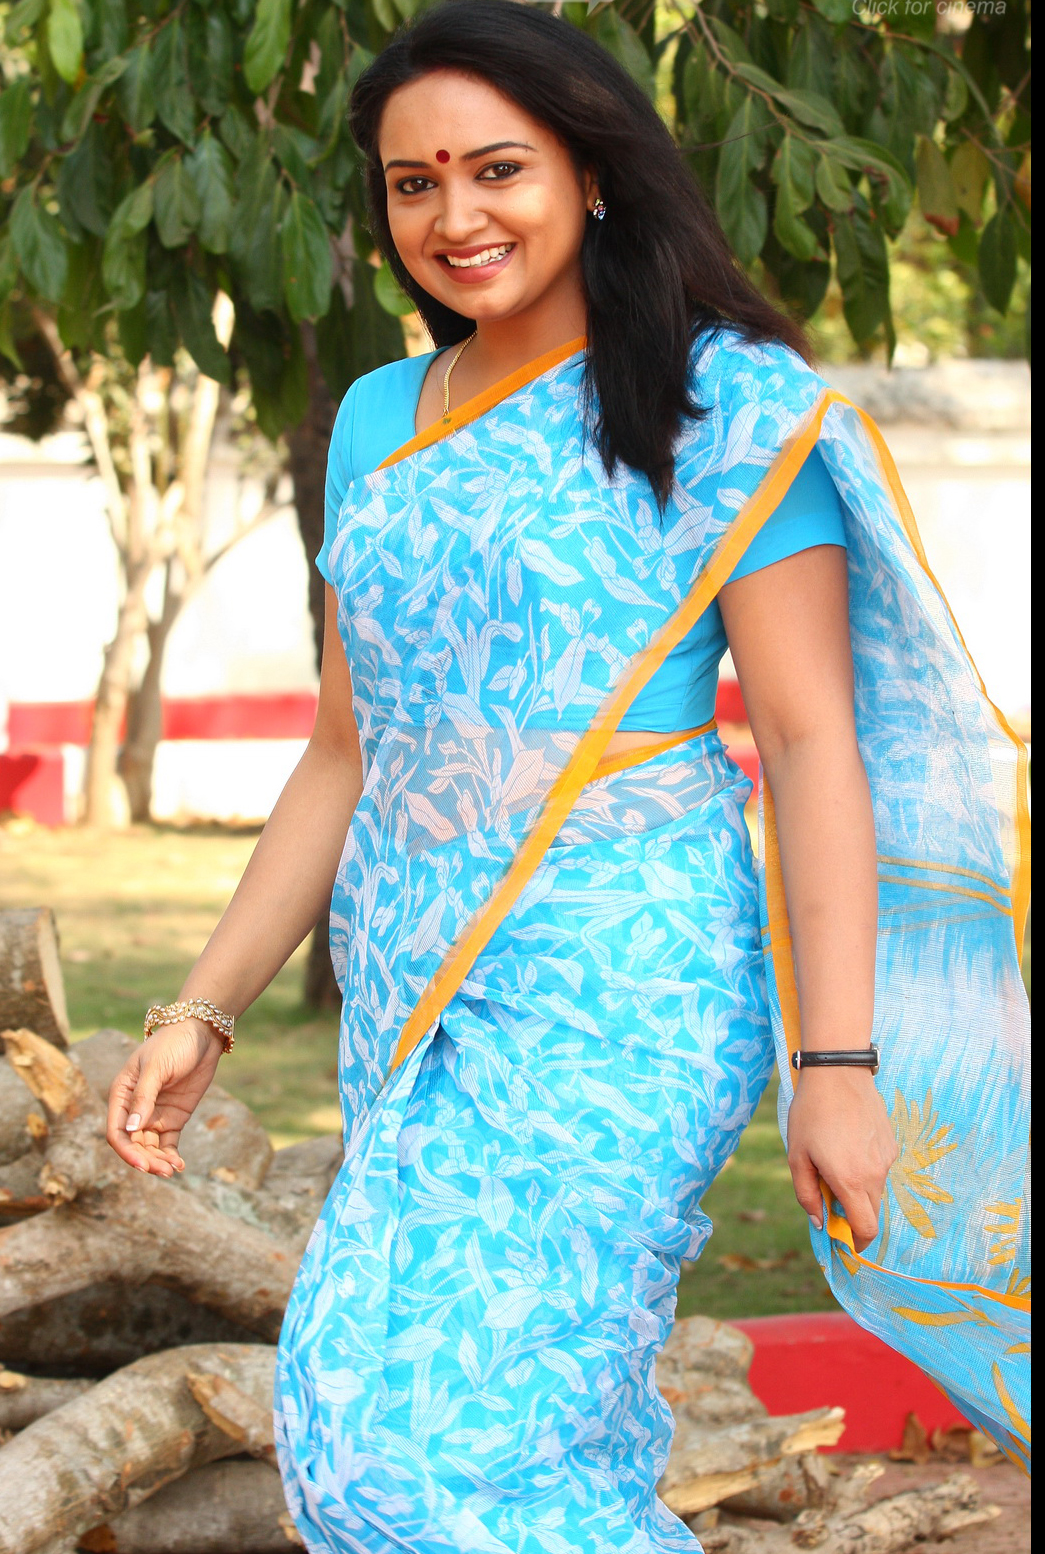 http://tontenk.files.wordpress.com/2011/01/malayalam-actress-lena-hot-2.jpg